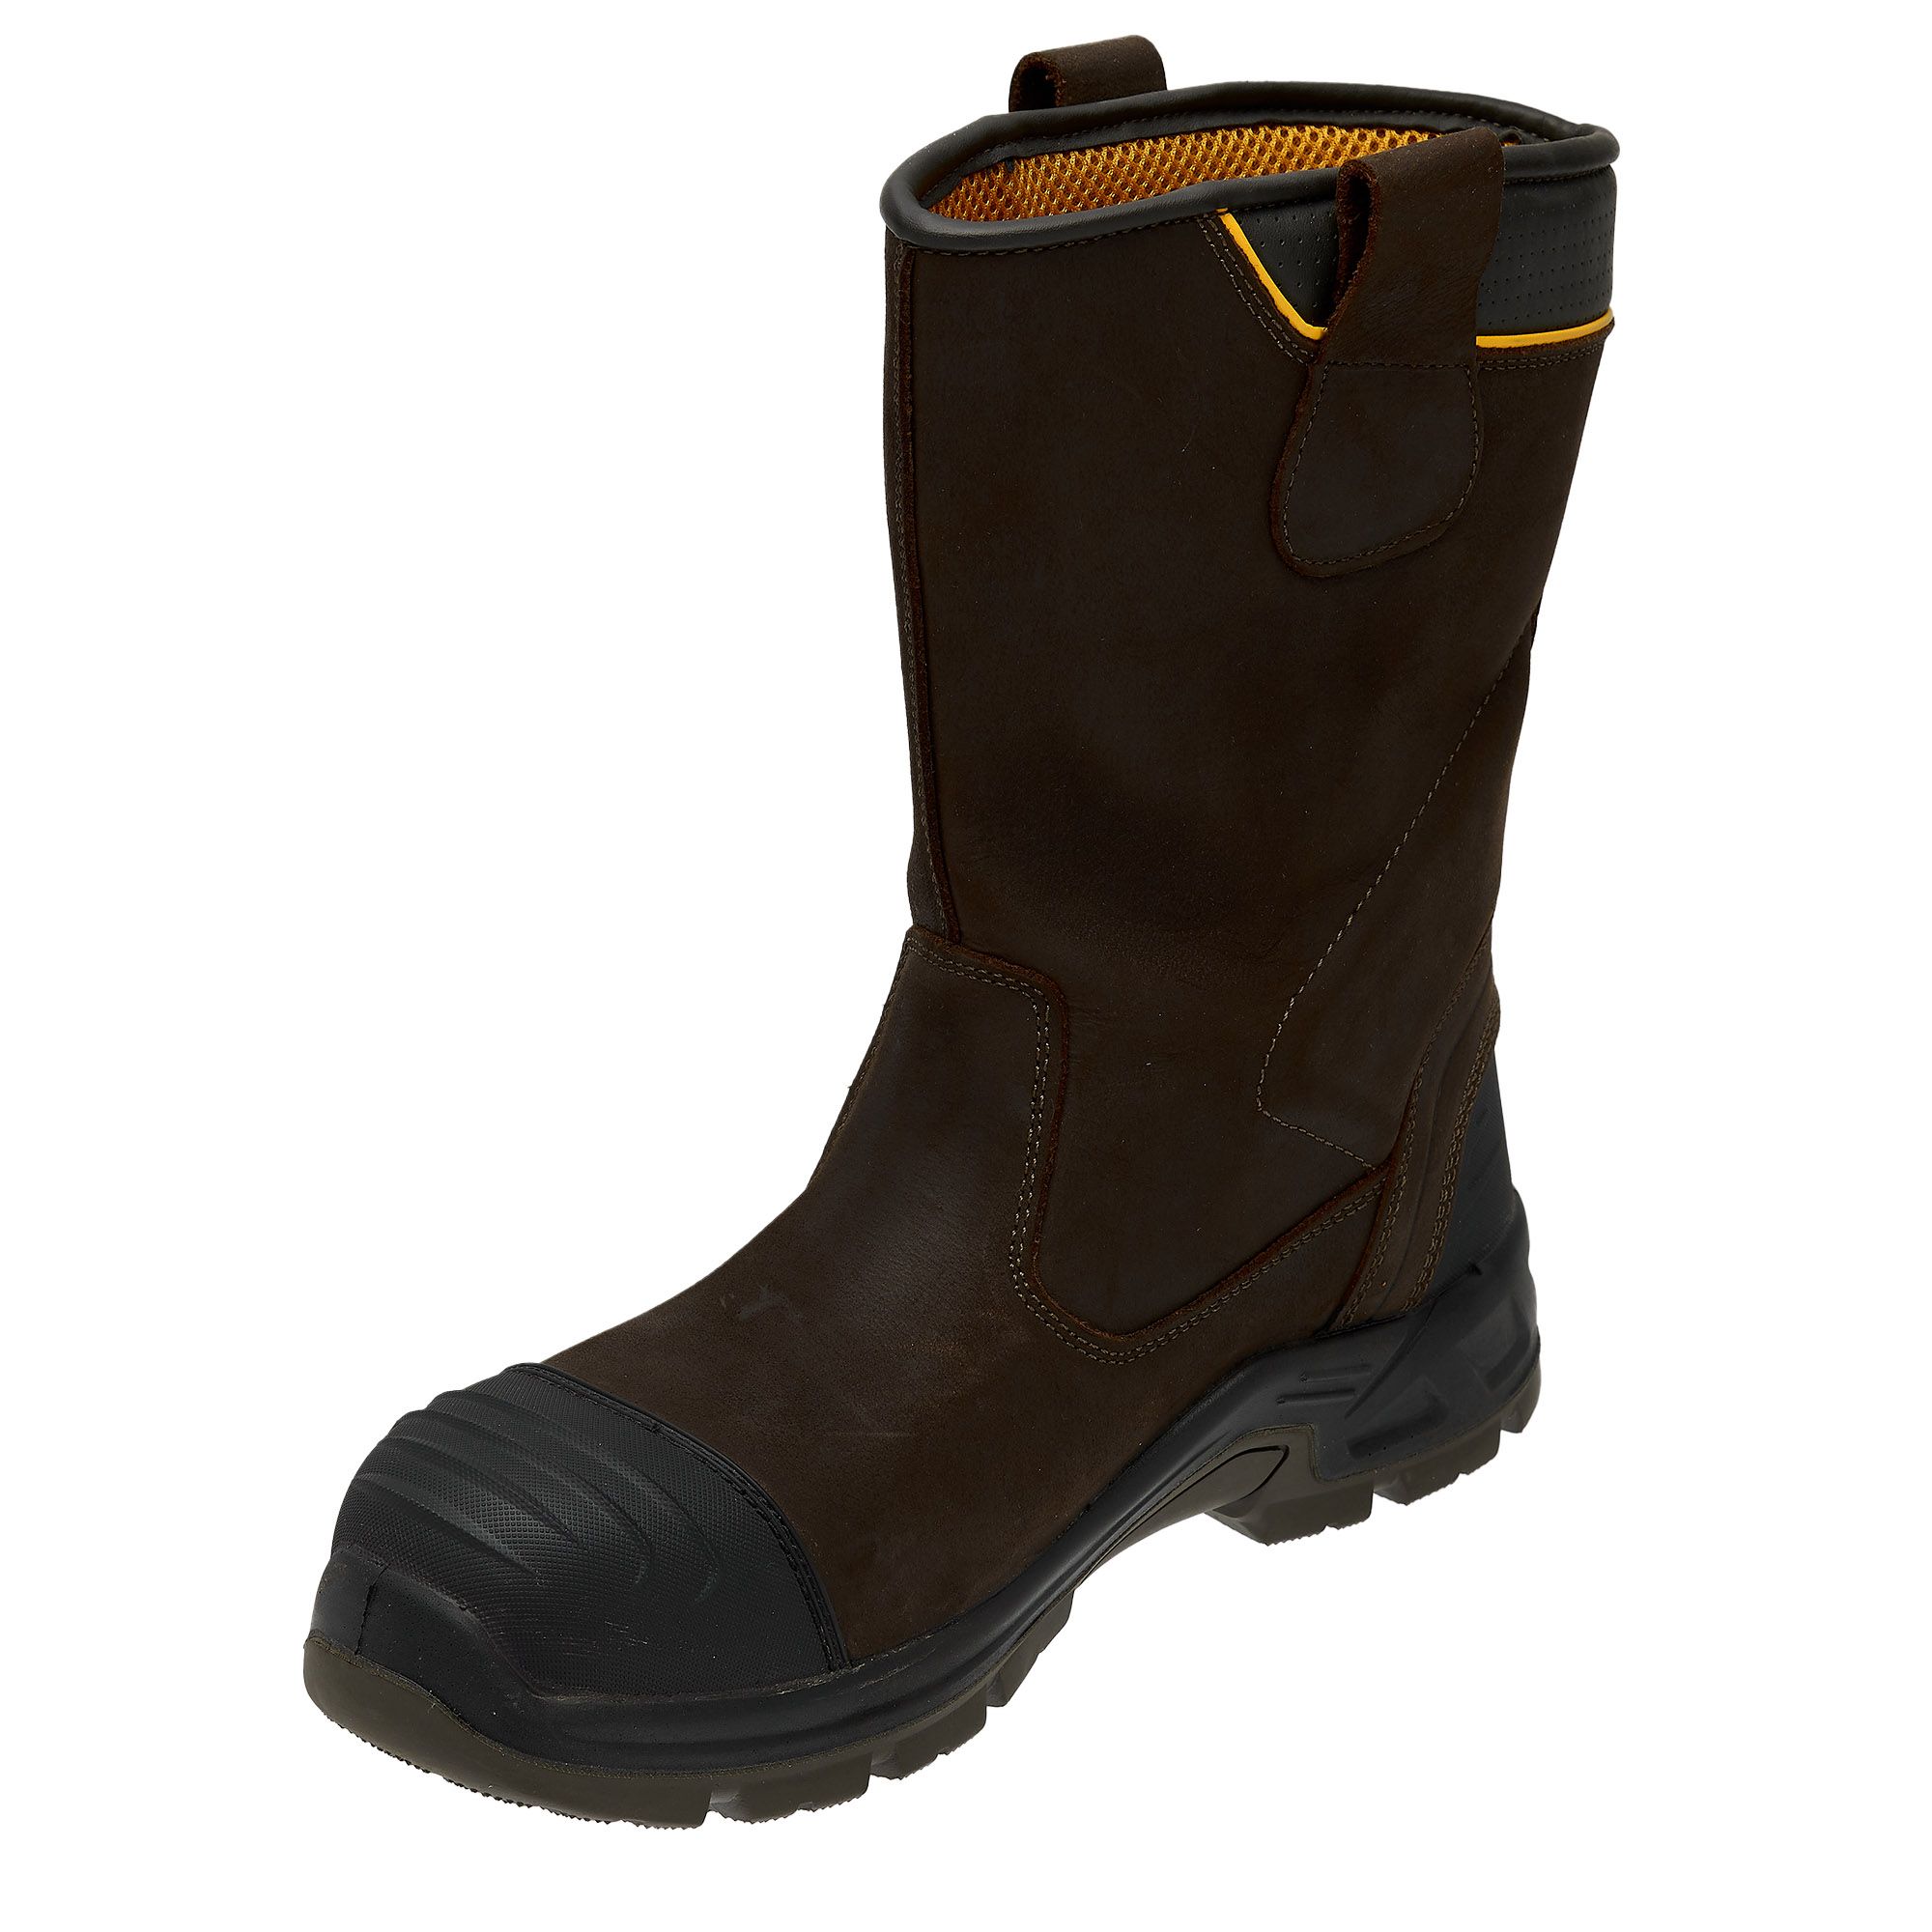 DeWalt Millington Brown Safety rigger boots, Size 12 | DIY at B&Q